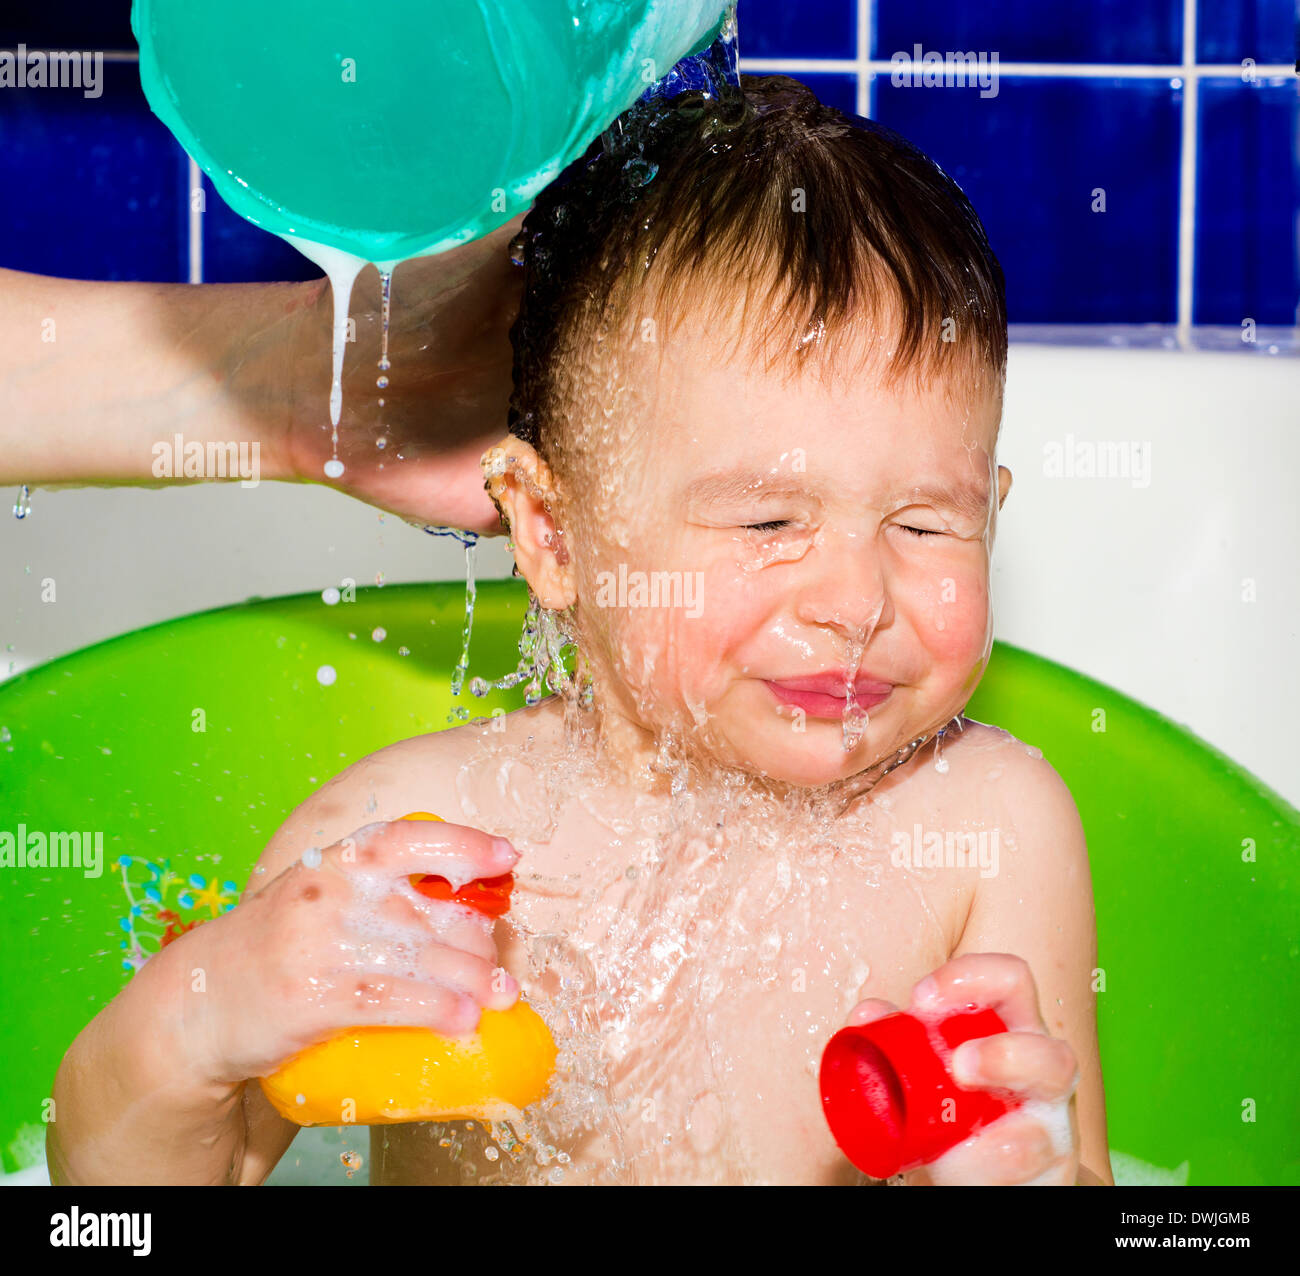 Купание мытье. Мытье ребенка. Для мытья ребенка в ванной. Ребенок купается в ванне весело. Ребенок с намыленной головой.